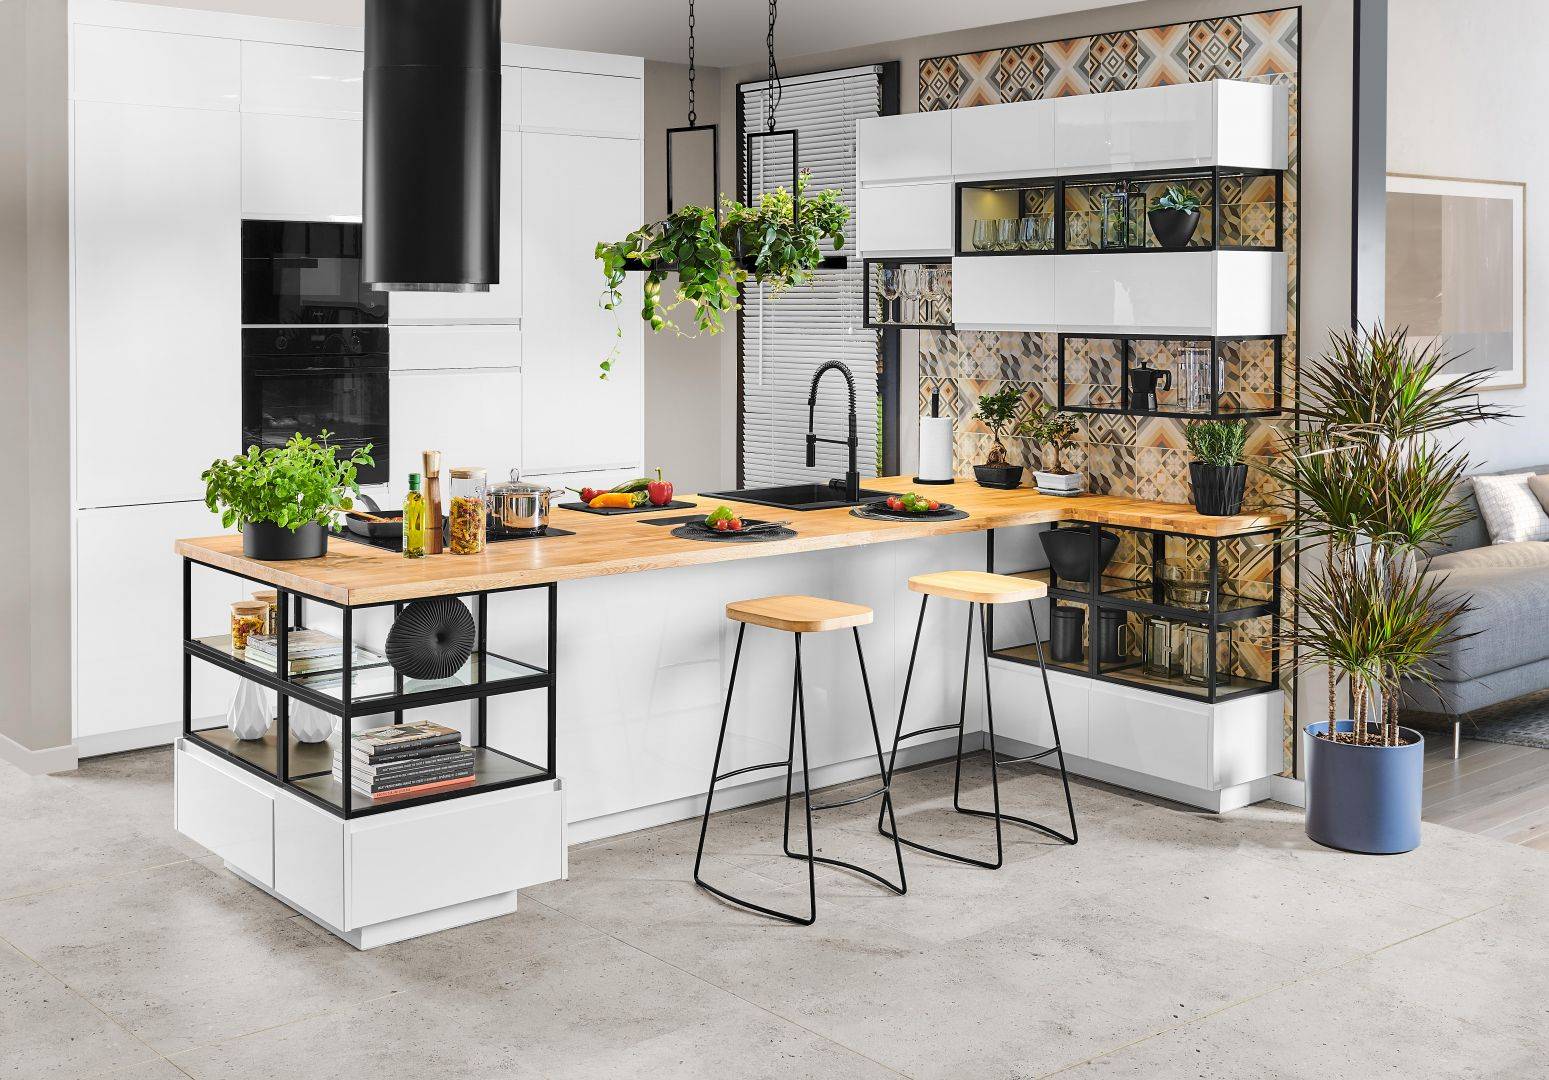 Топ-7 новинок леруа мерлен — магазин расширяет коллекцию мебели и аксессуаров для кухни